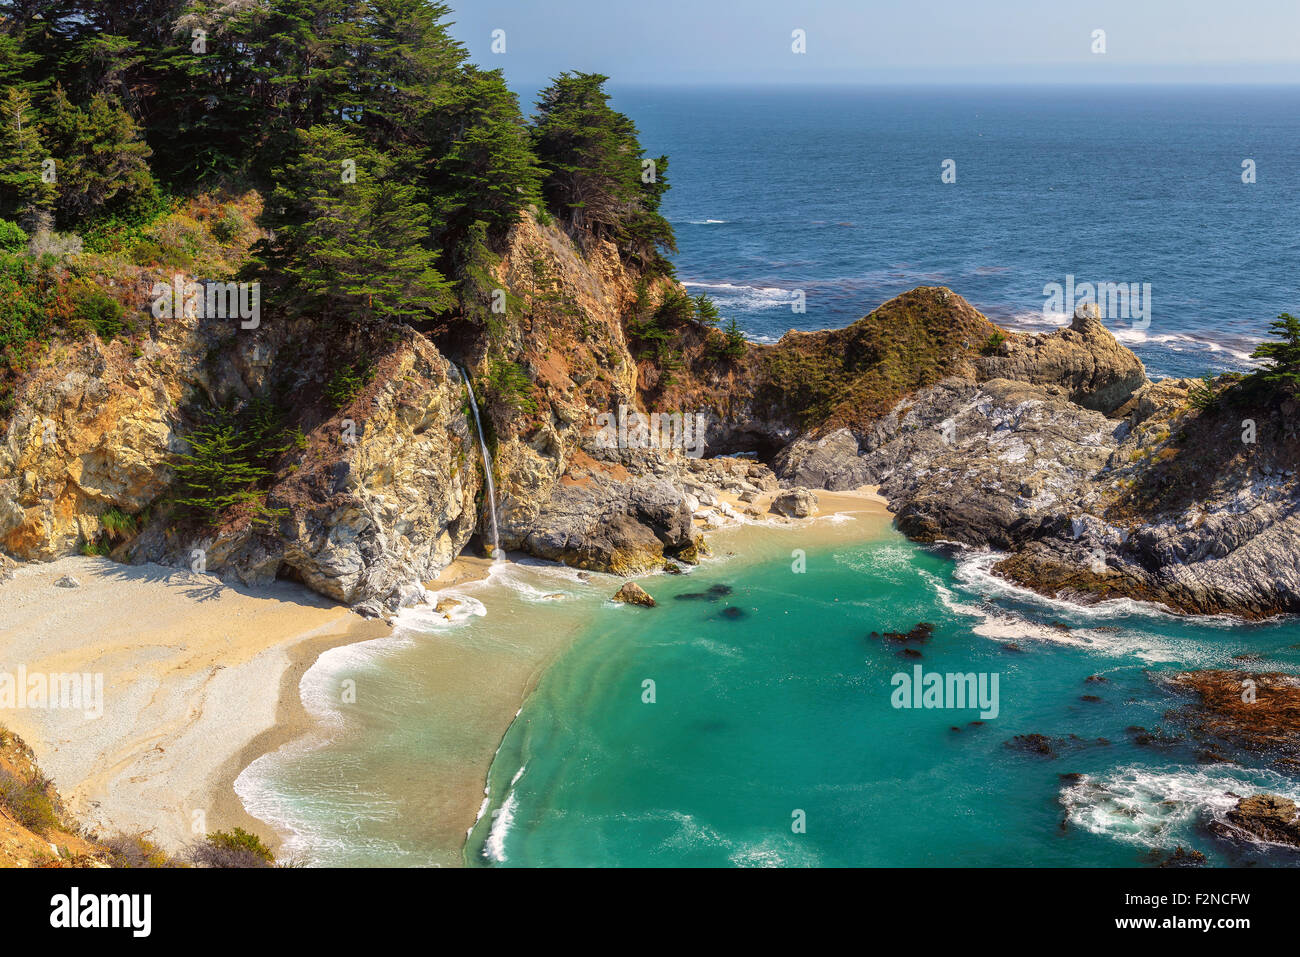 Fine beach and falls in Pacific coast, Big Sur. California, USA Stock Photo